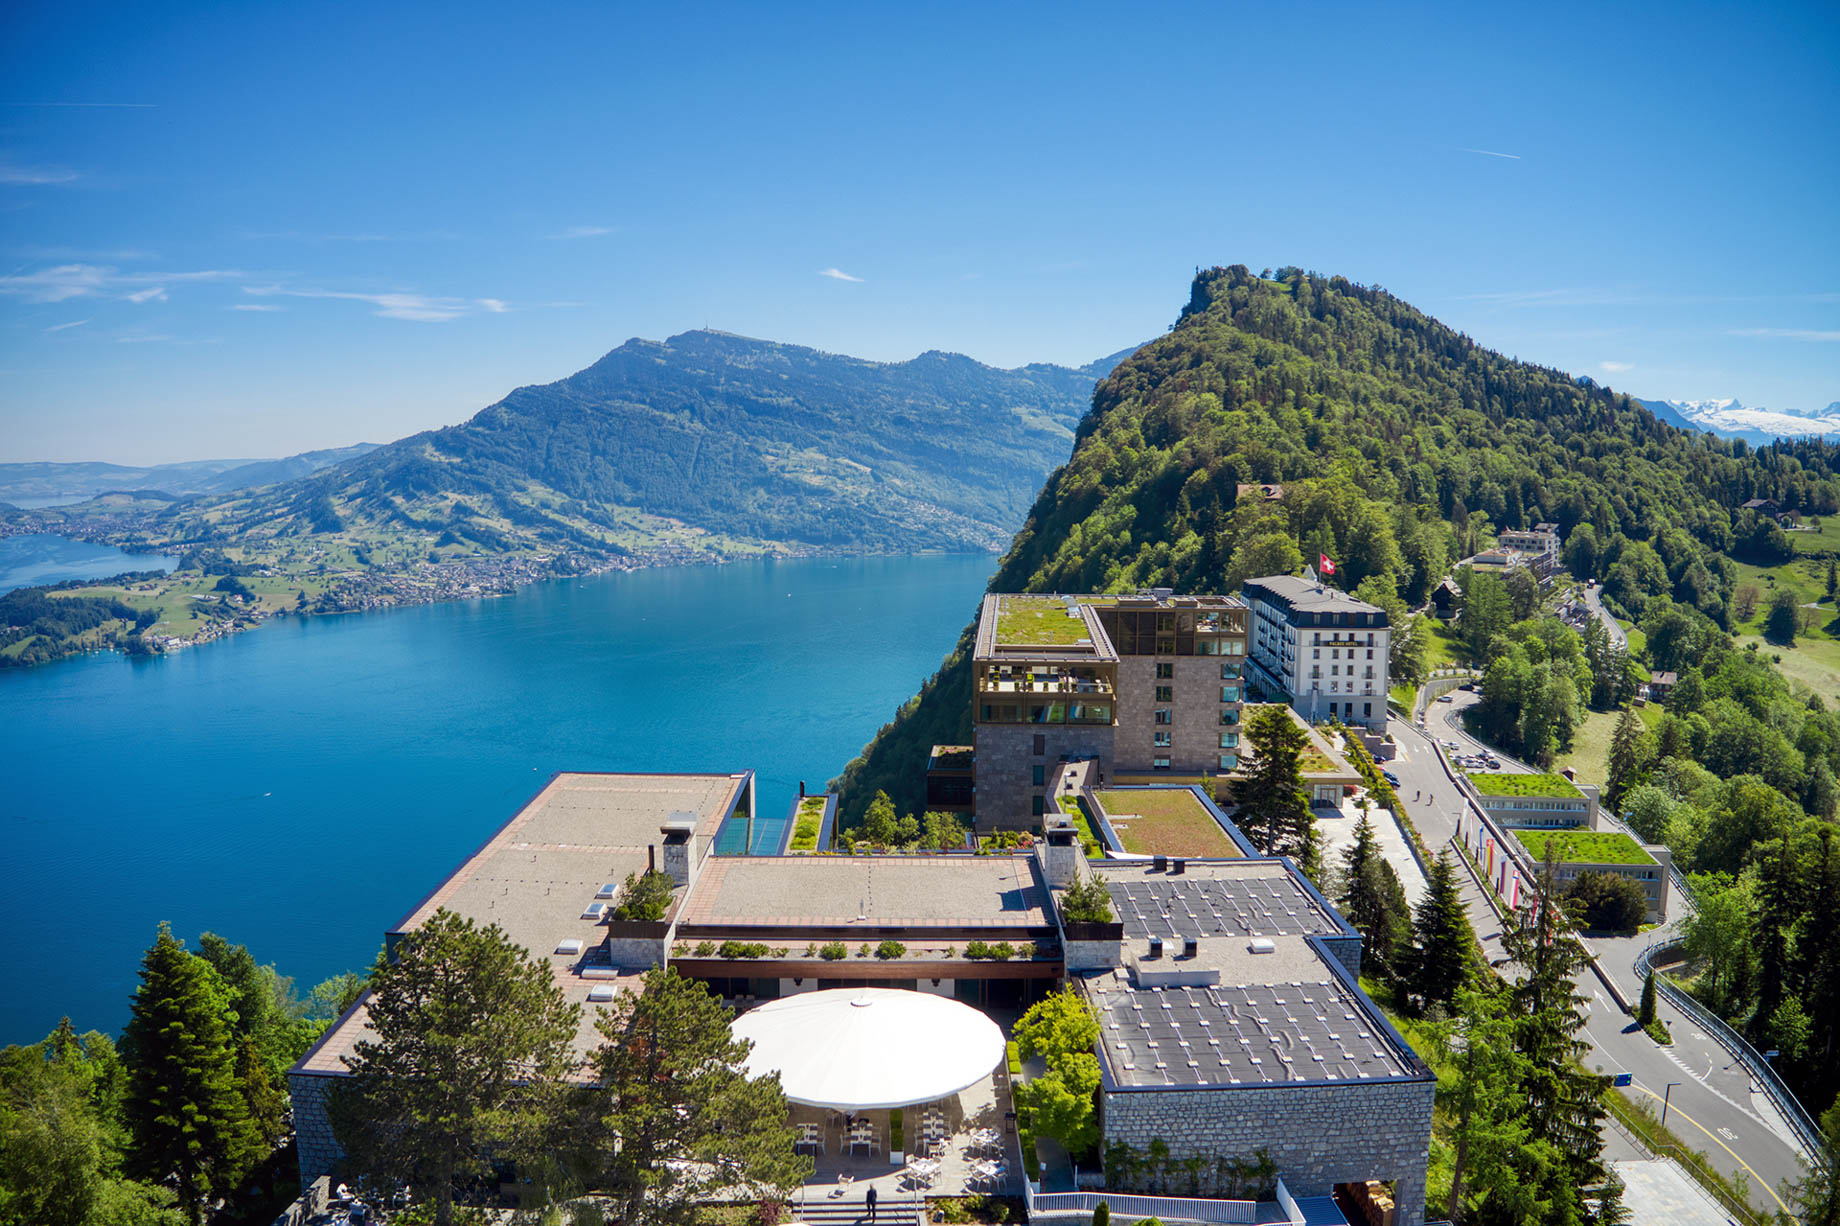 Burgenstock Hotel & Alpine Spa – Obburgen, Switzerland – Spa and Hotel Aerial View